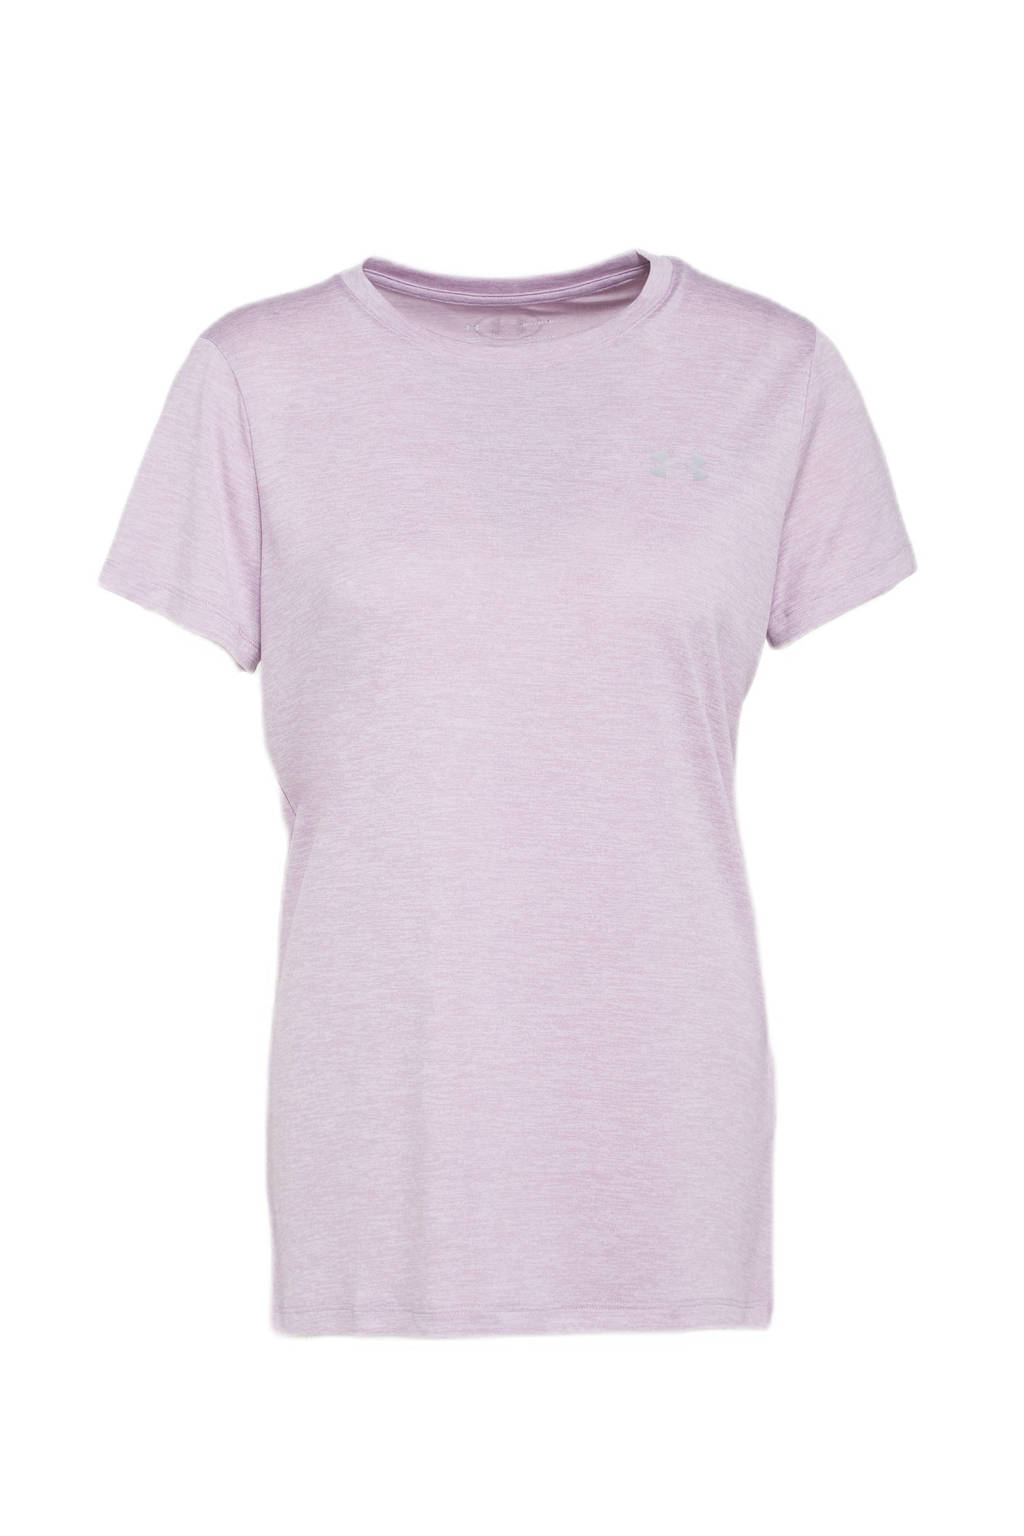 Roze dames Under Armour sport T-shirt van polyester met logo dessin, korte mouwen en ronde hals